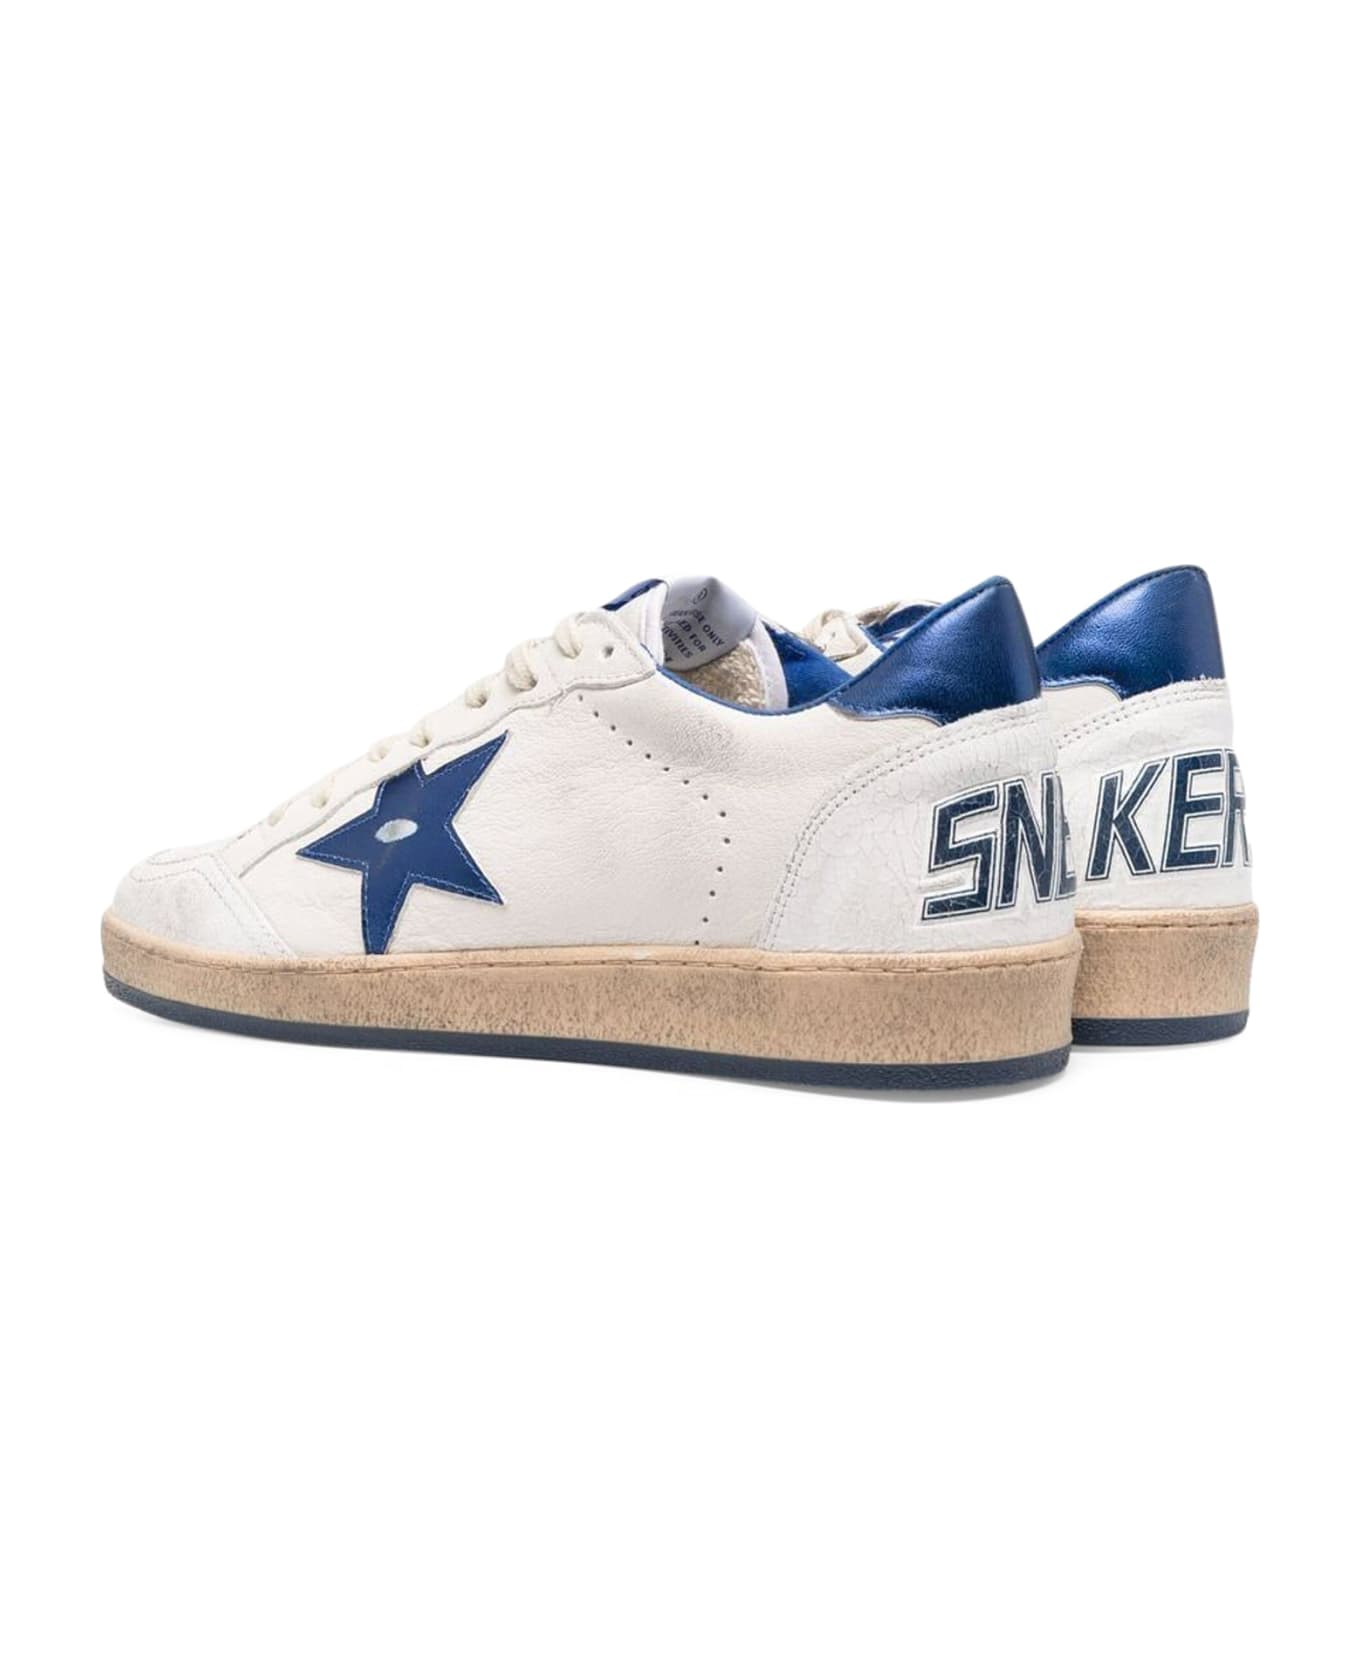 Golden Goose Ball Star Sneakers - White/Bluette